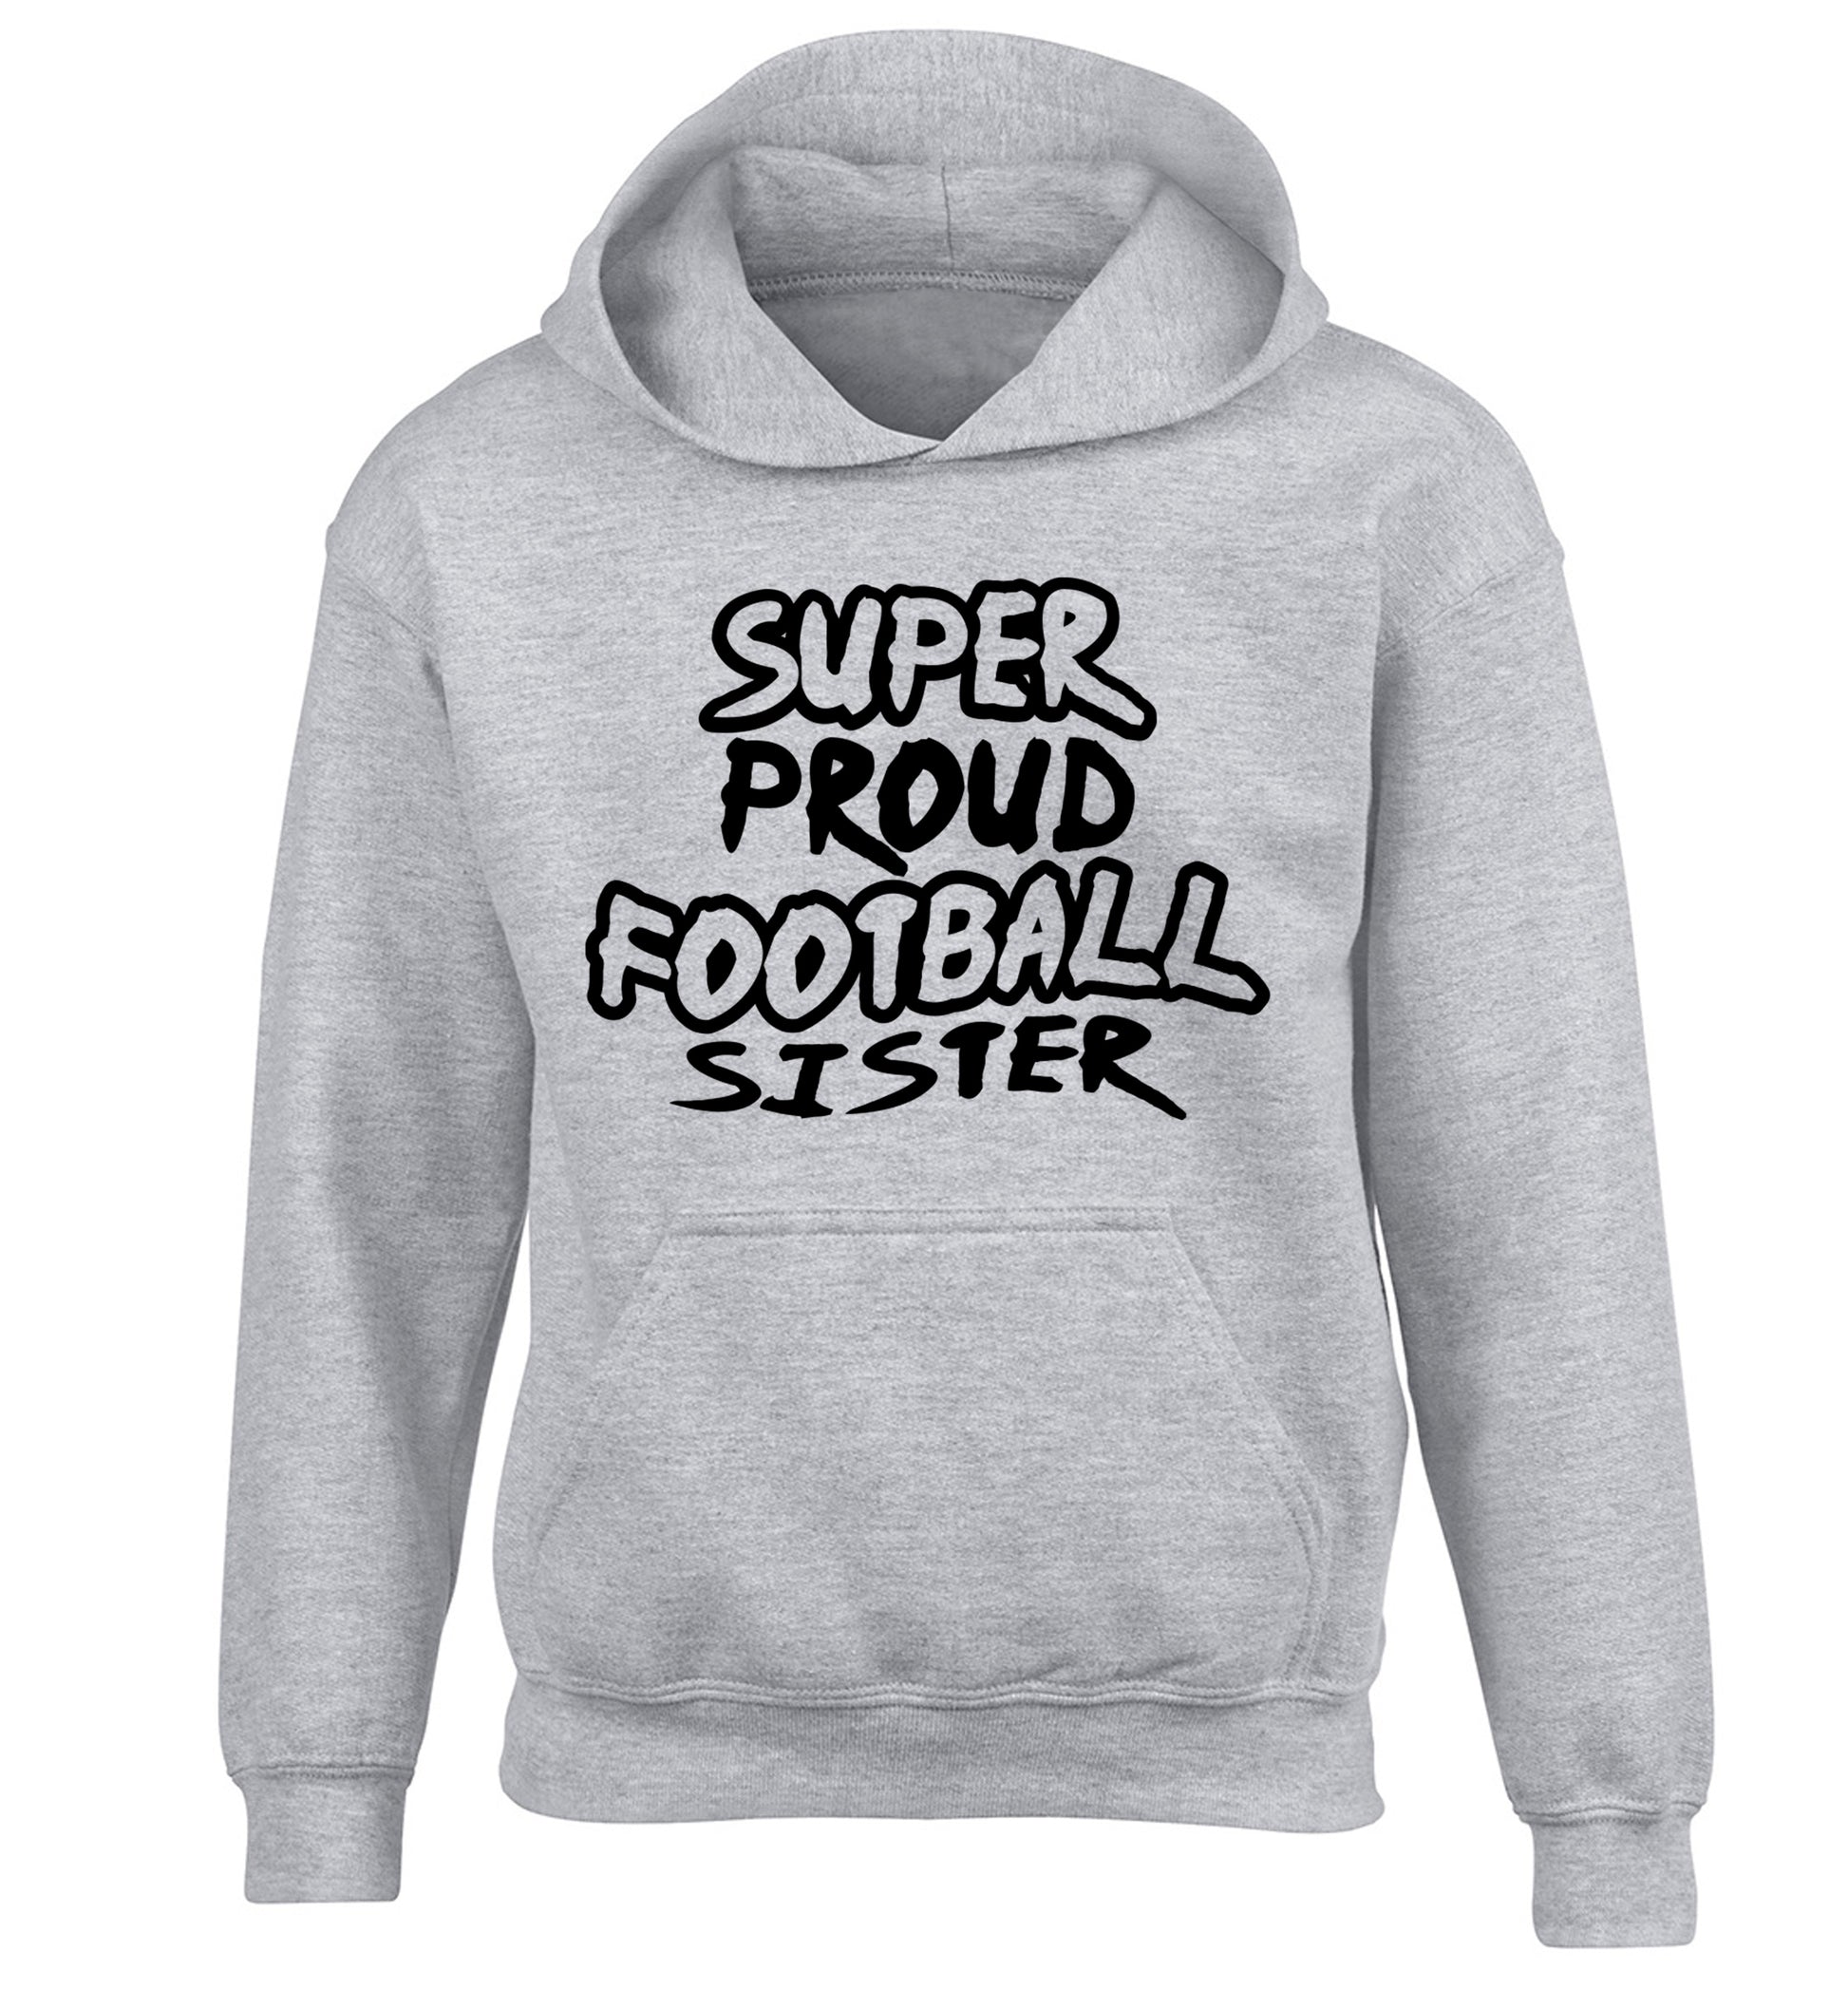 Super proud football sister children's grey hoodie 12-14 Years